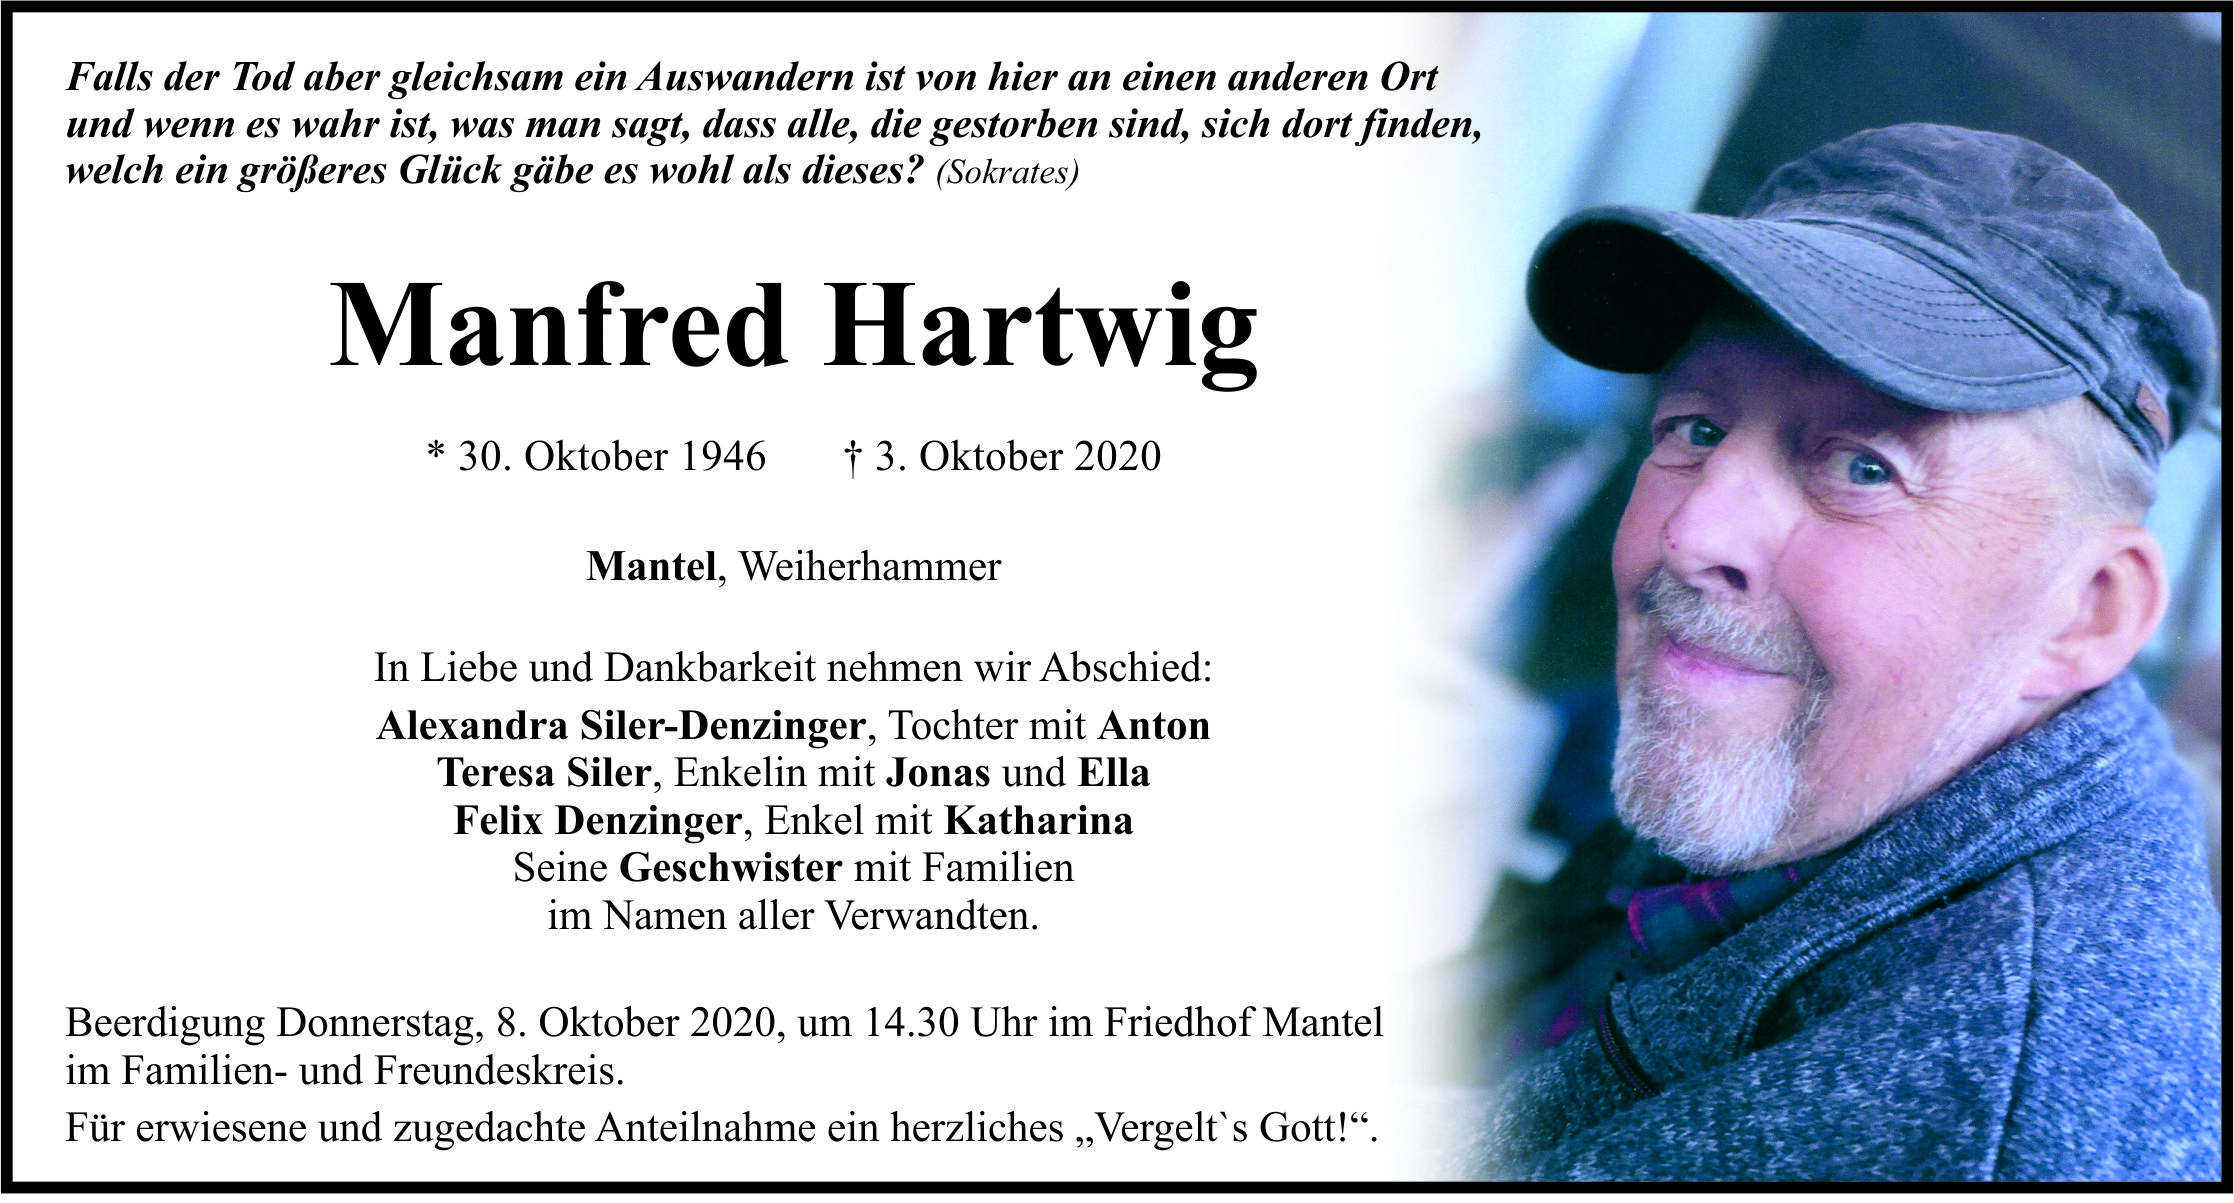 Traueranzeige Manfred Hartwig, Mantel